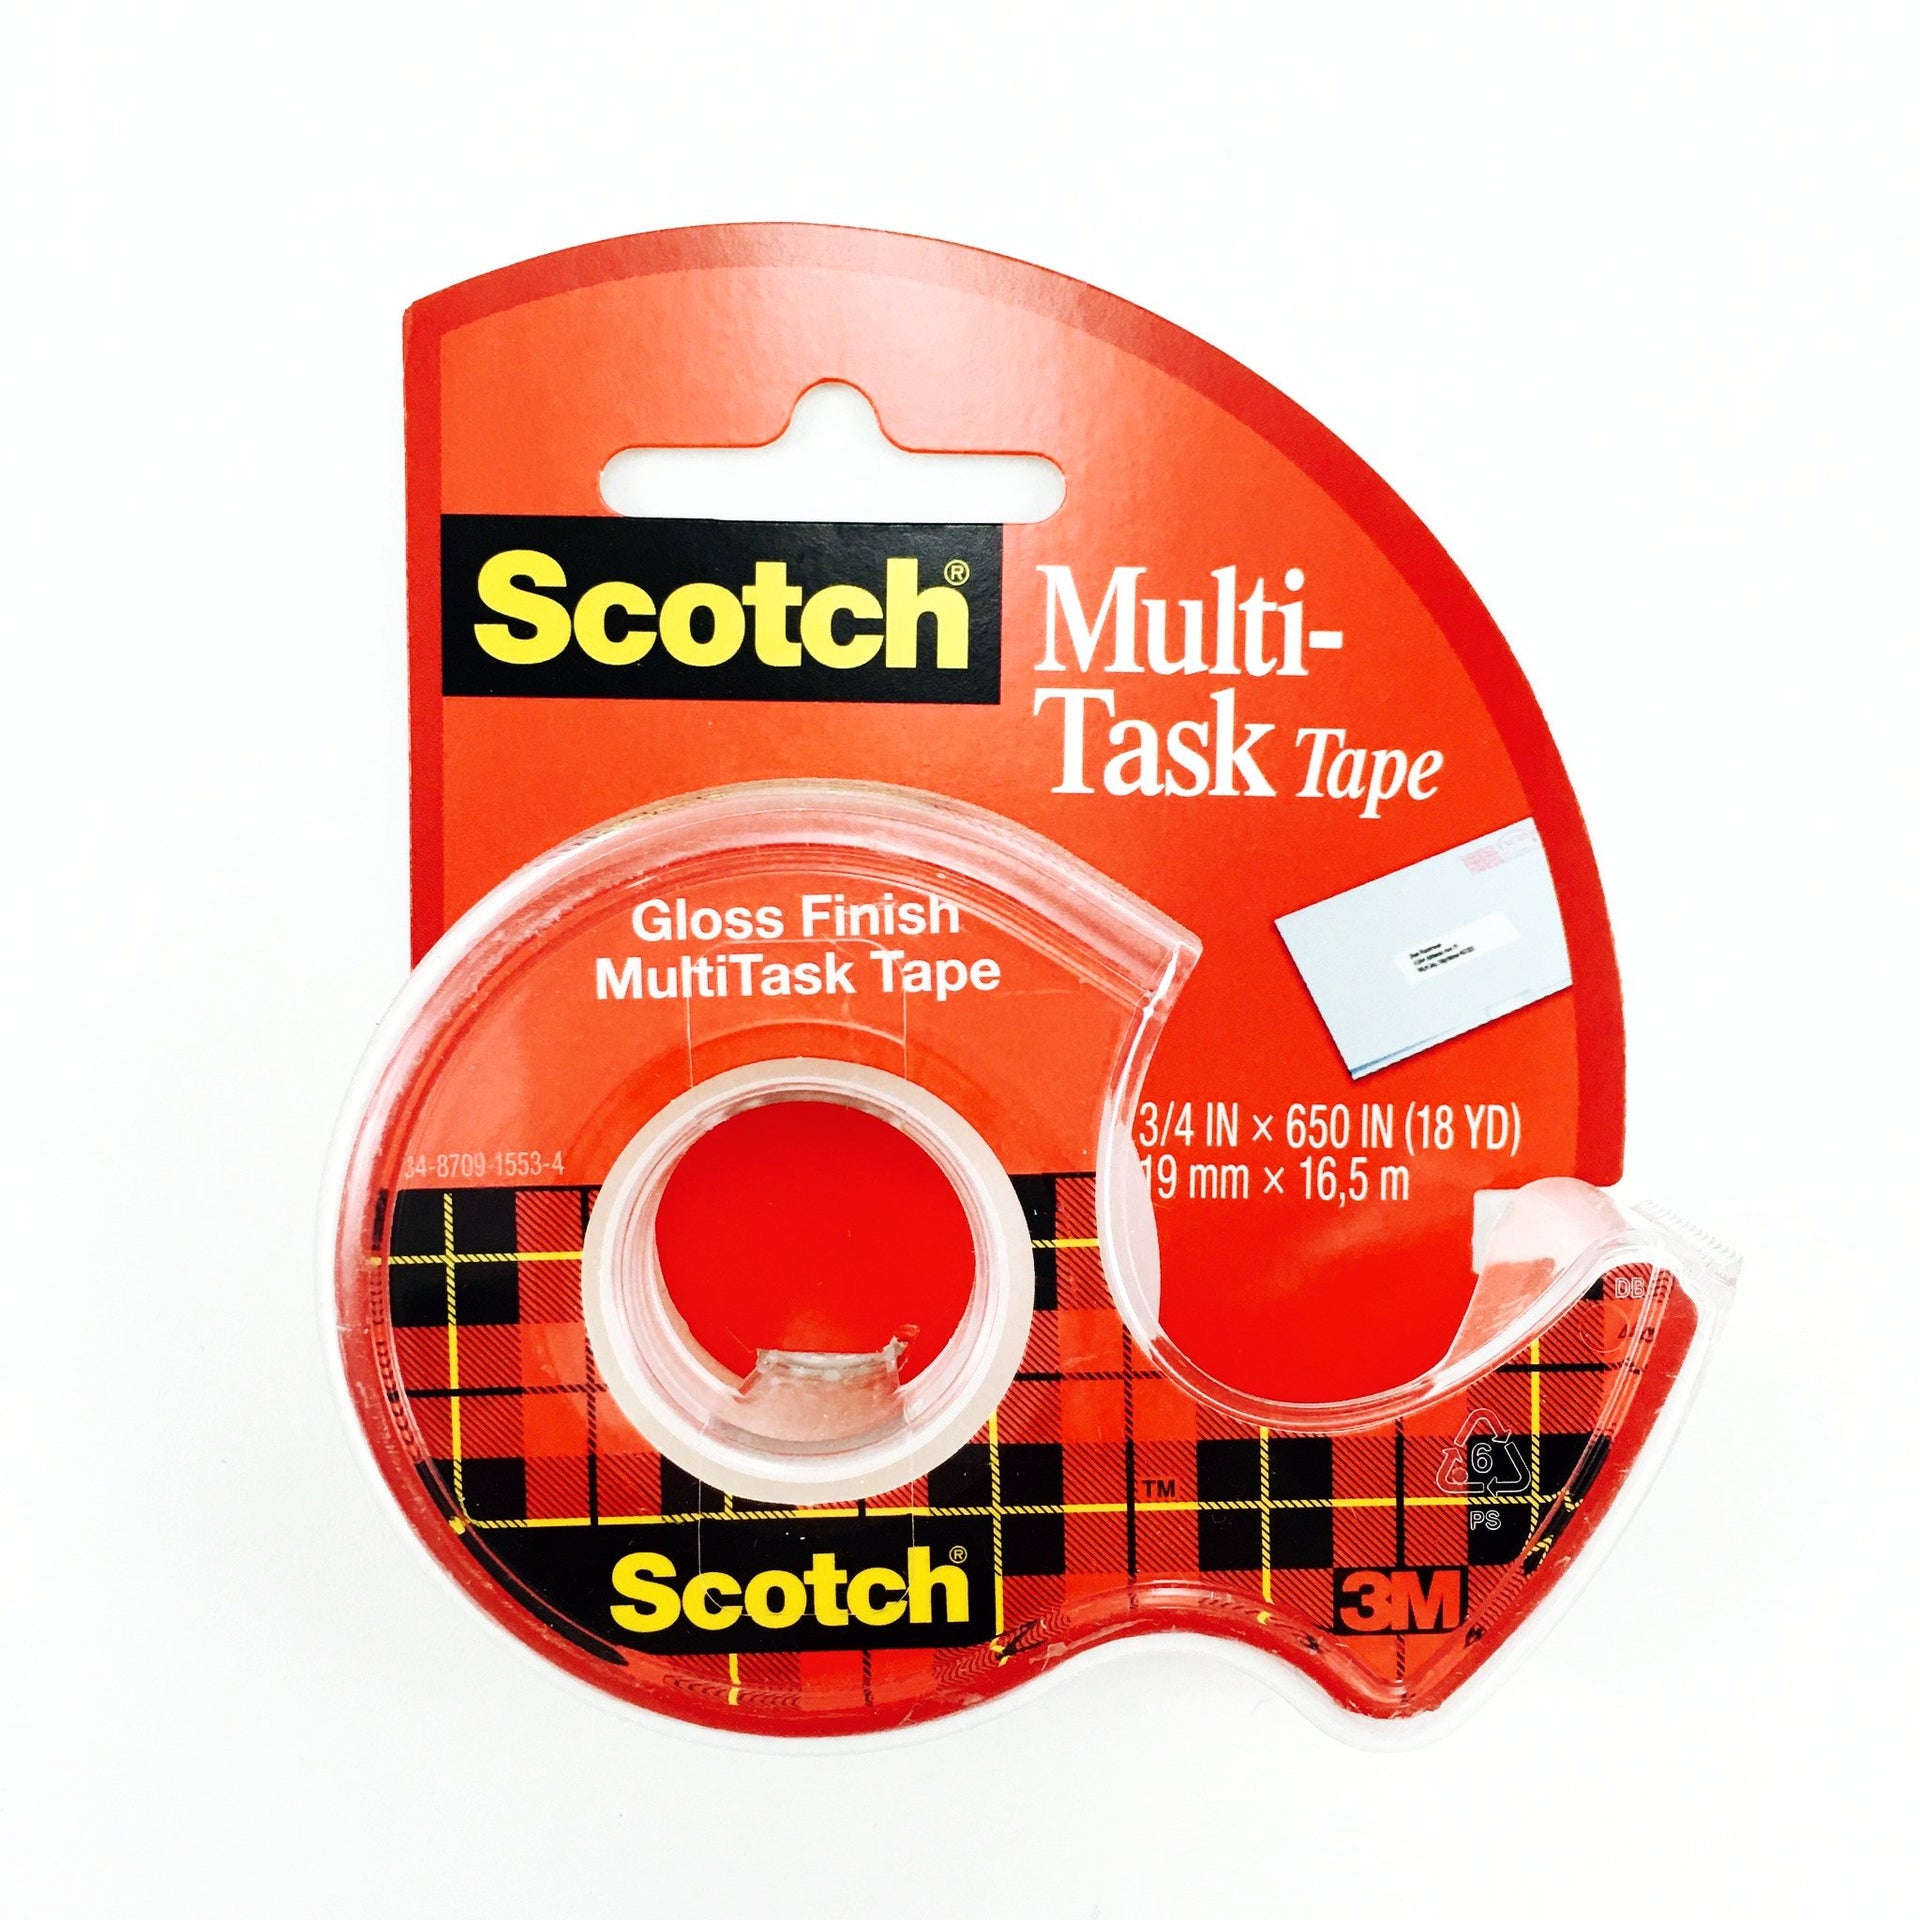 Scotch® 3M 3/4 Painters Masking Tape